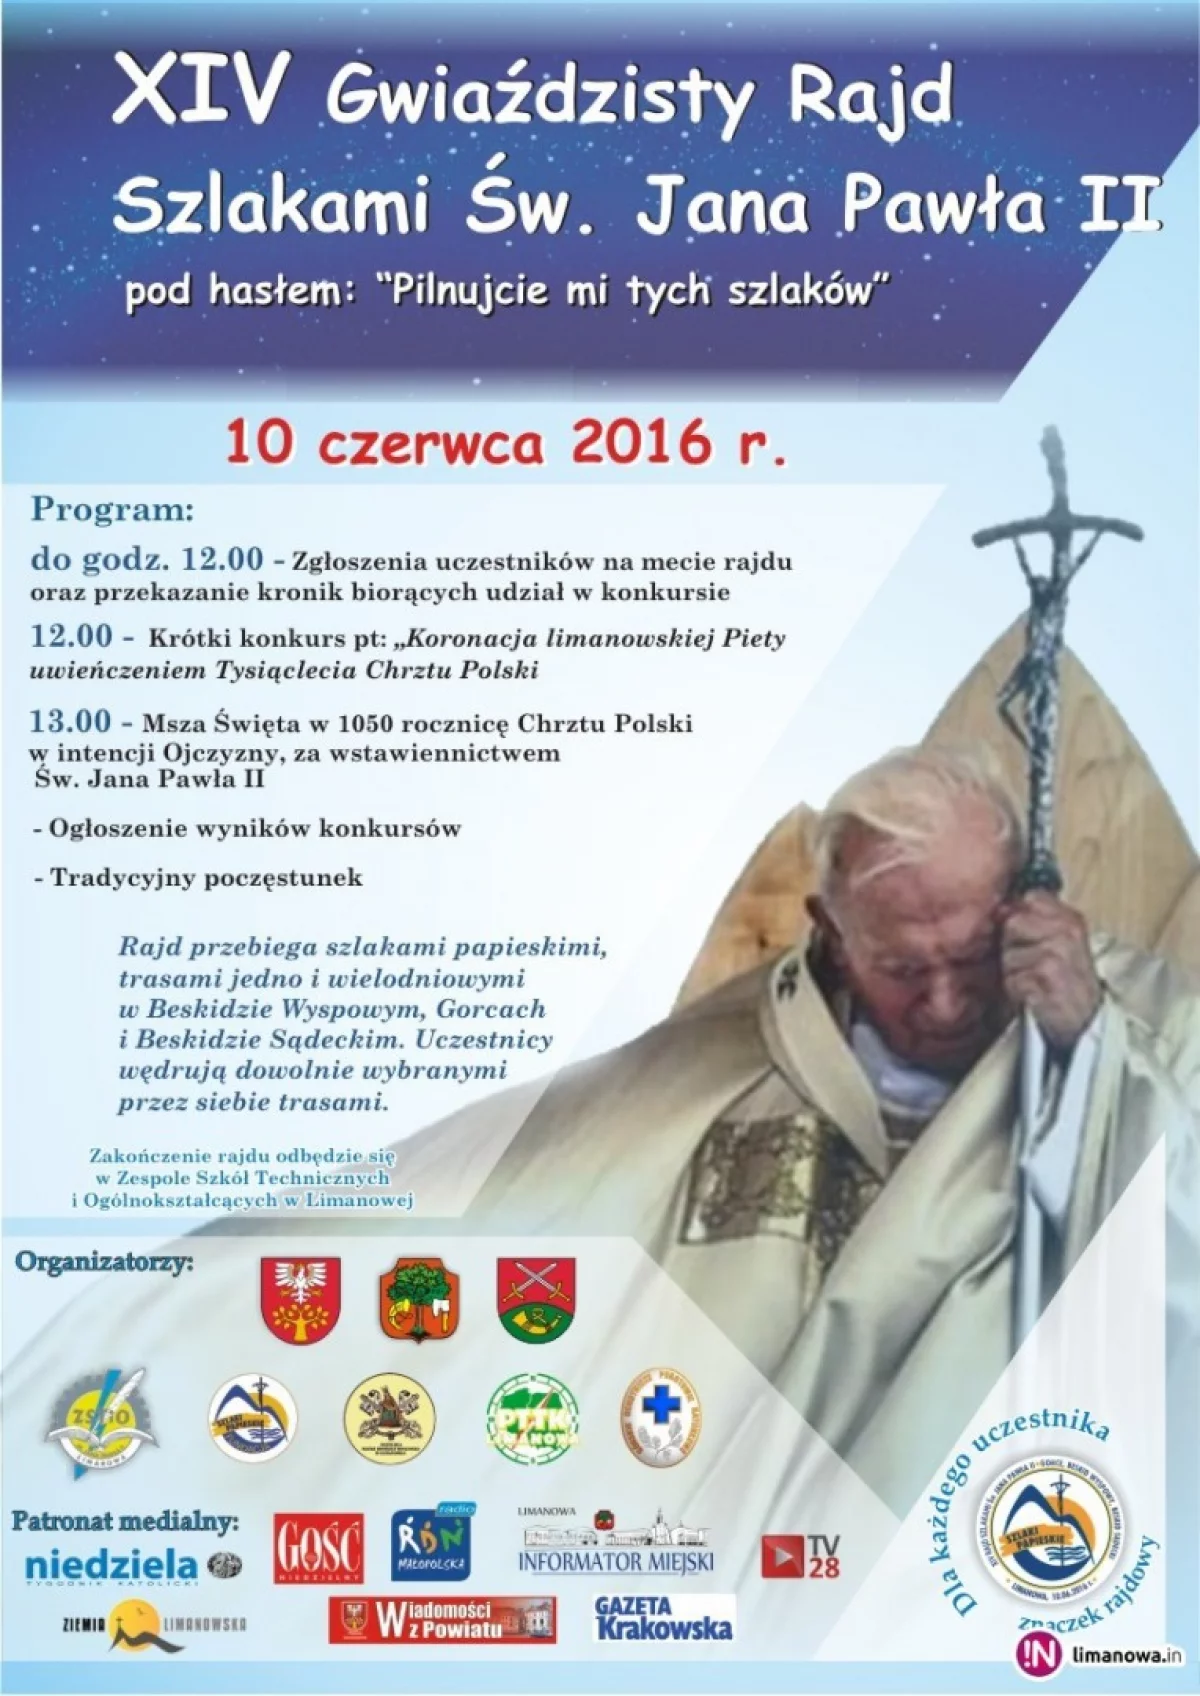 Zapraszamy do udziału w XIV Gwiaździstym Rajdzie Szlakami Świętego Jana Pawła II